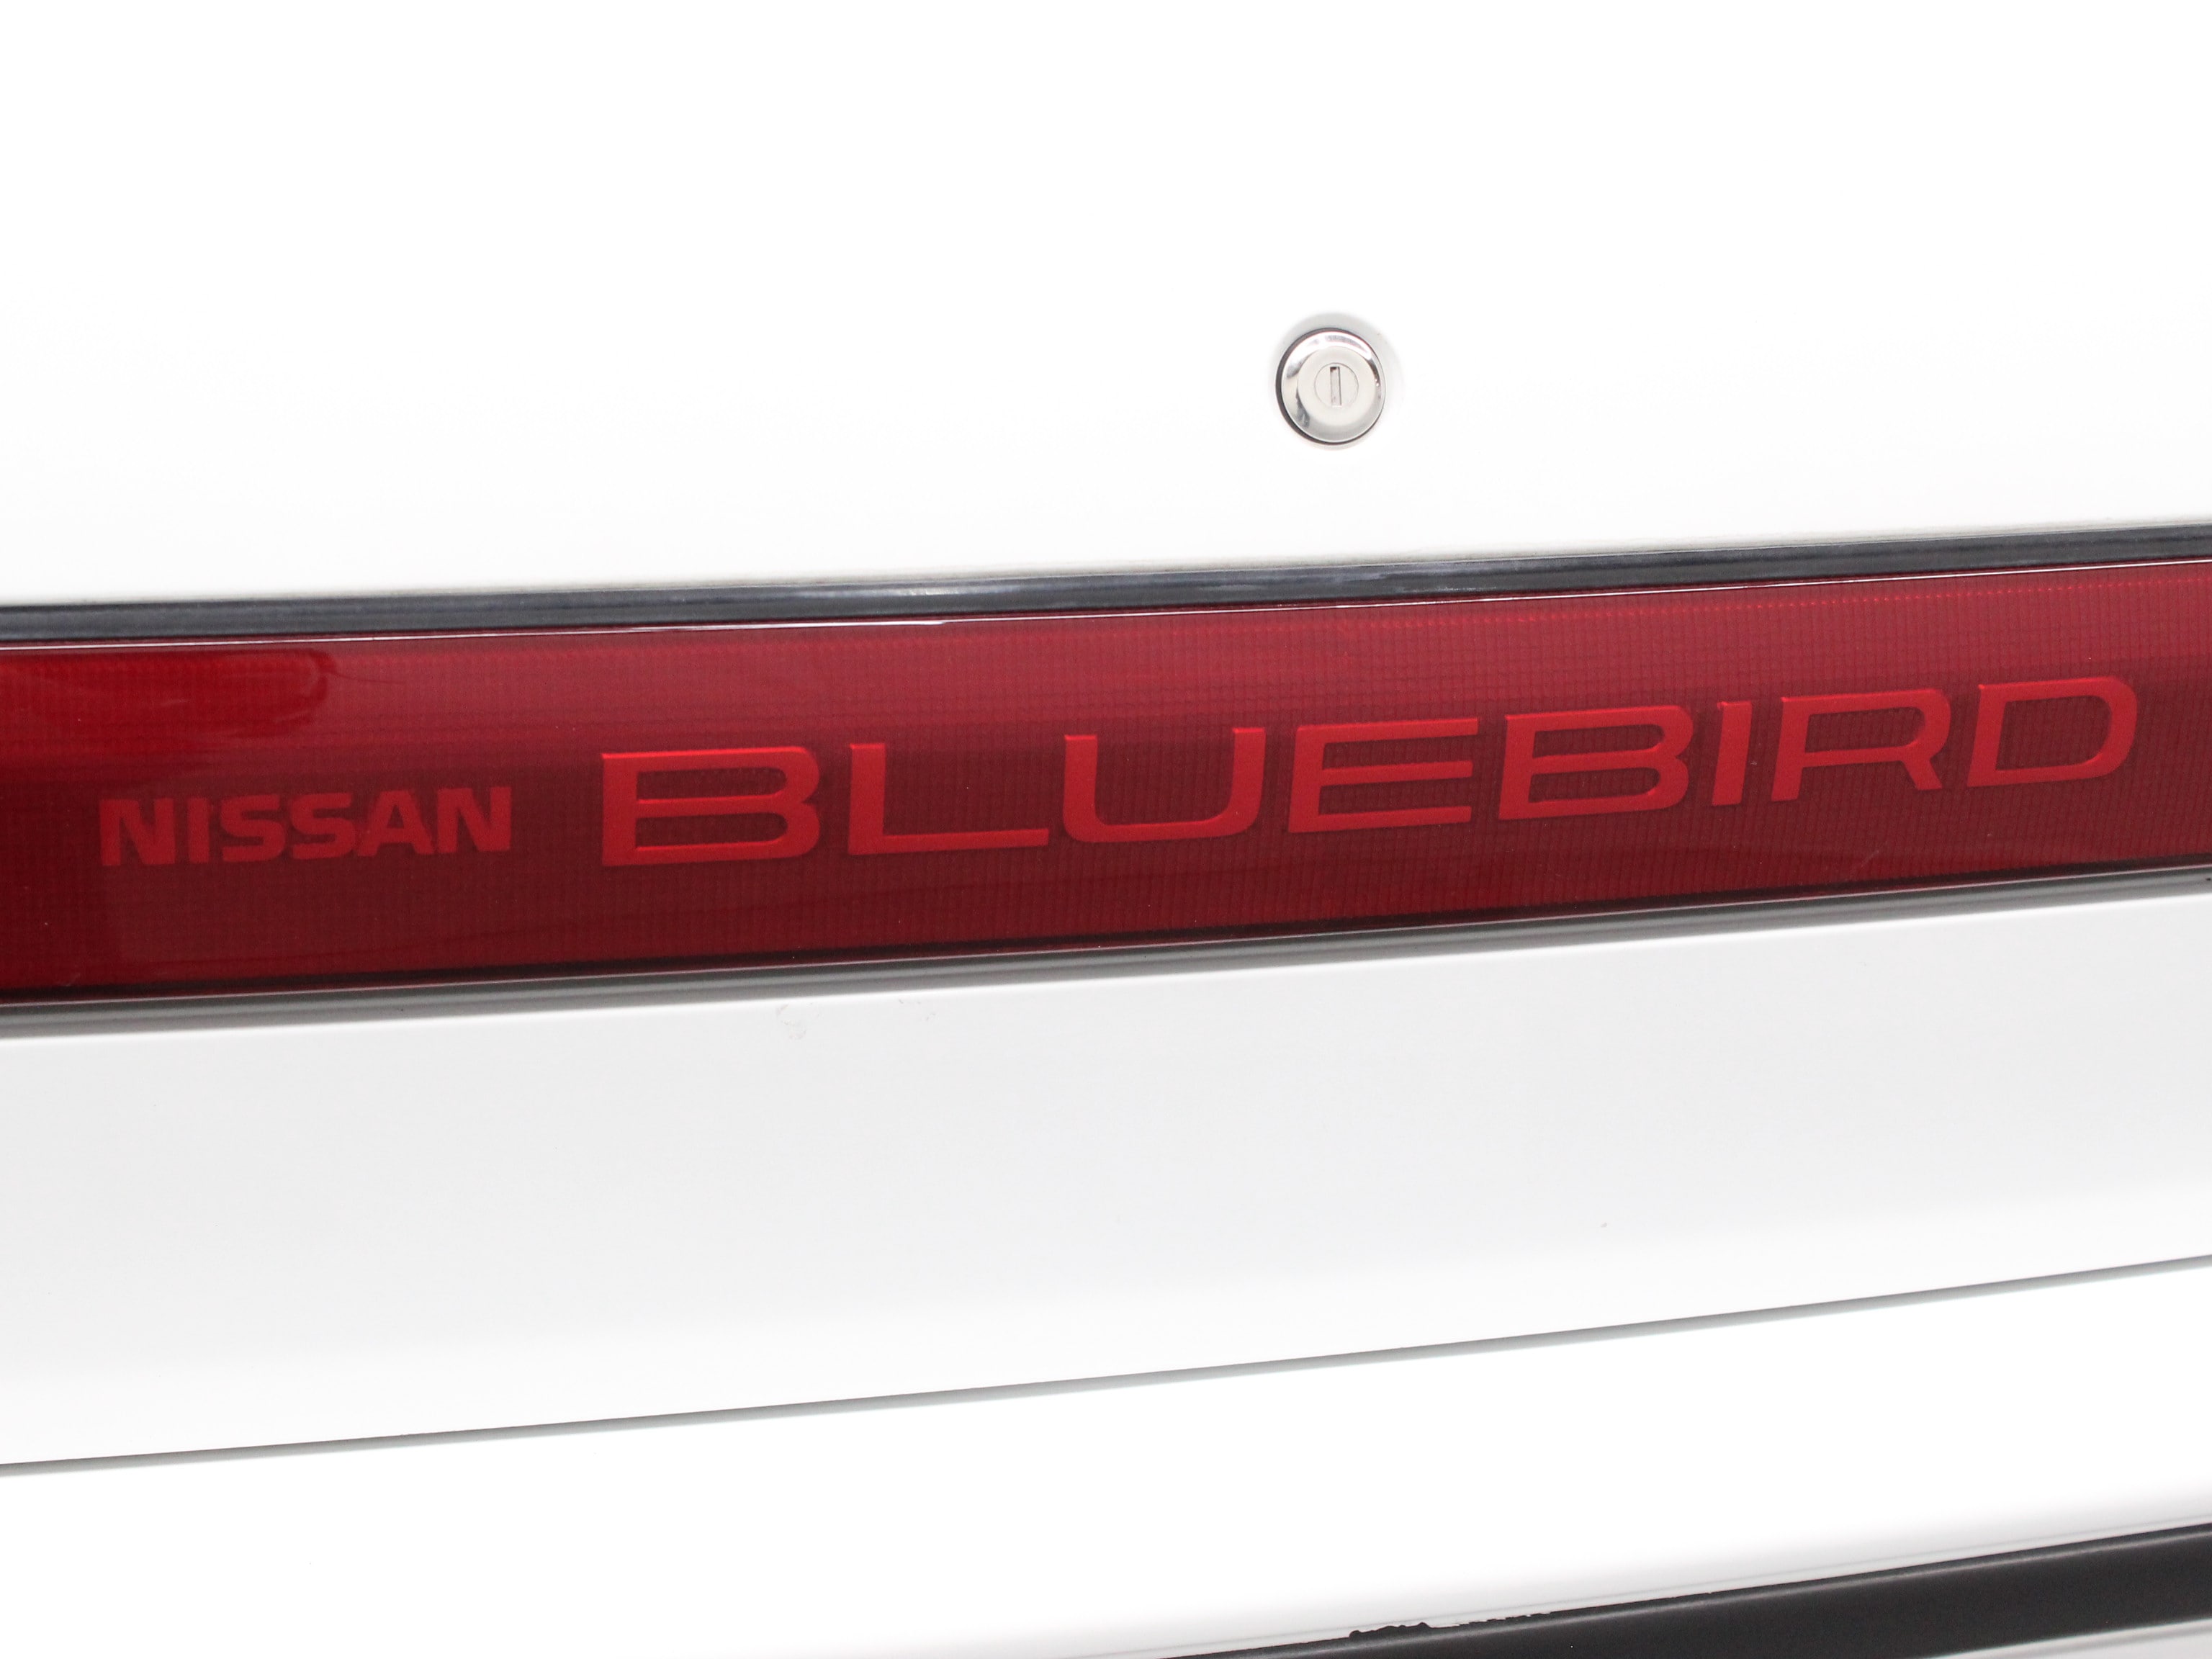 1987 Nissan Bluebird 51